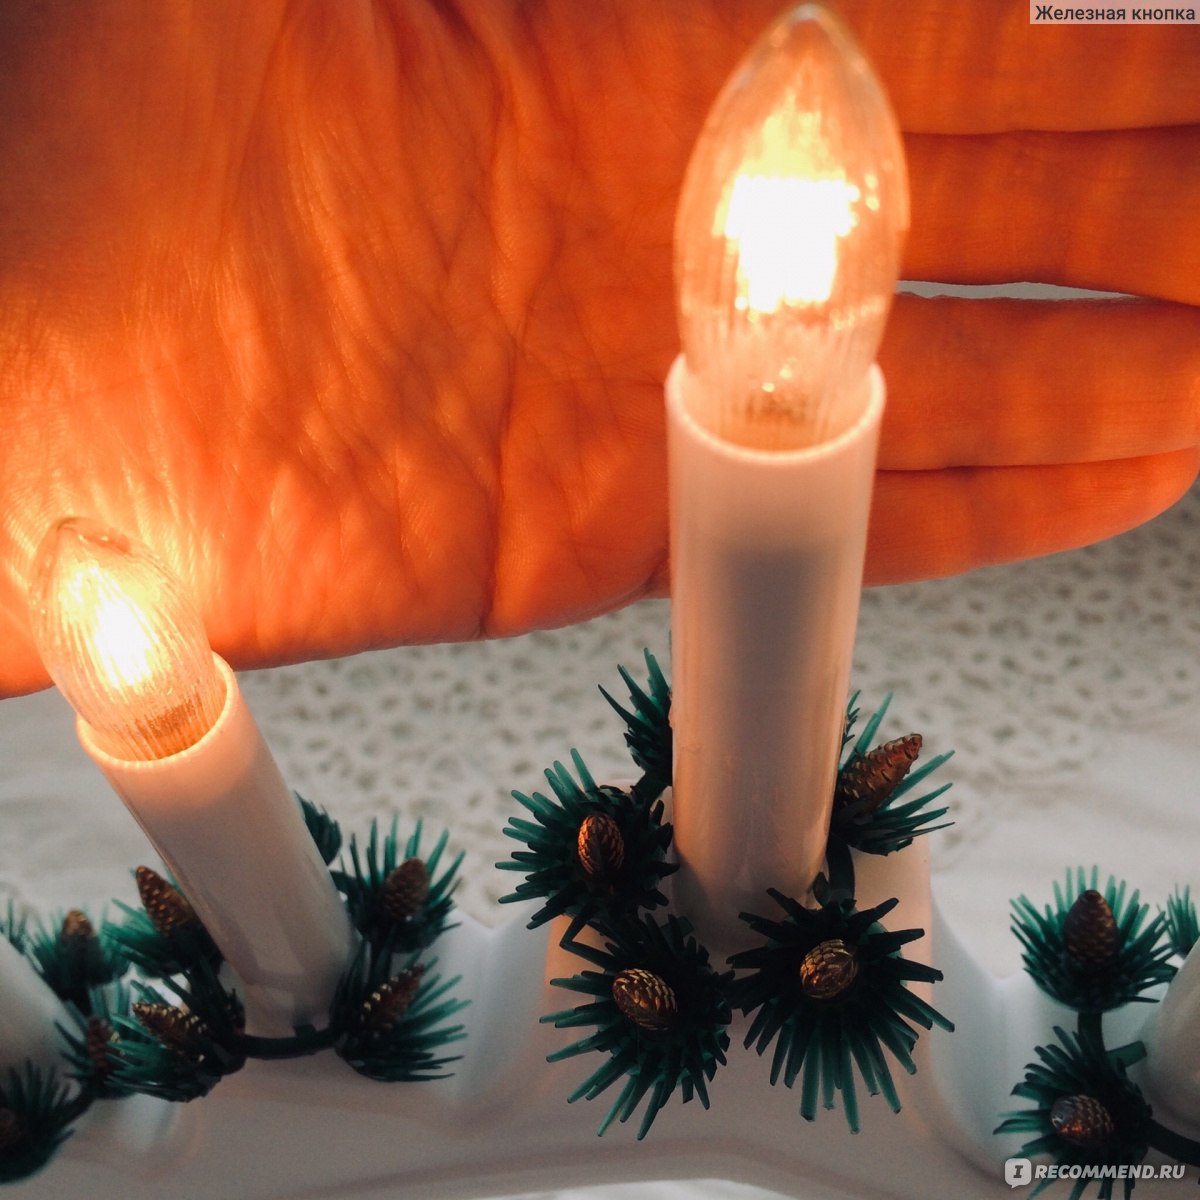 Рождественская горка-светильник — создаём дома волшебство для детей